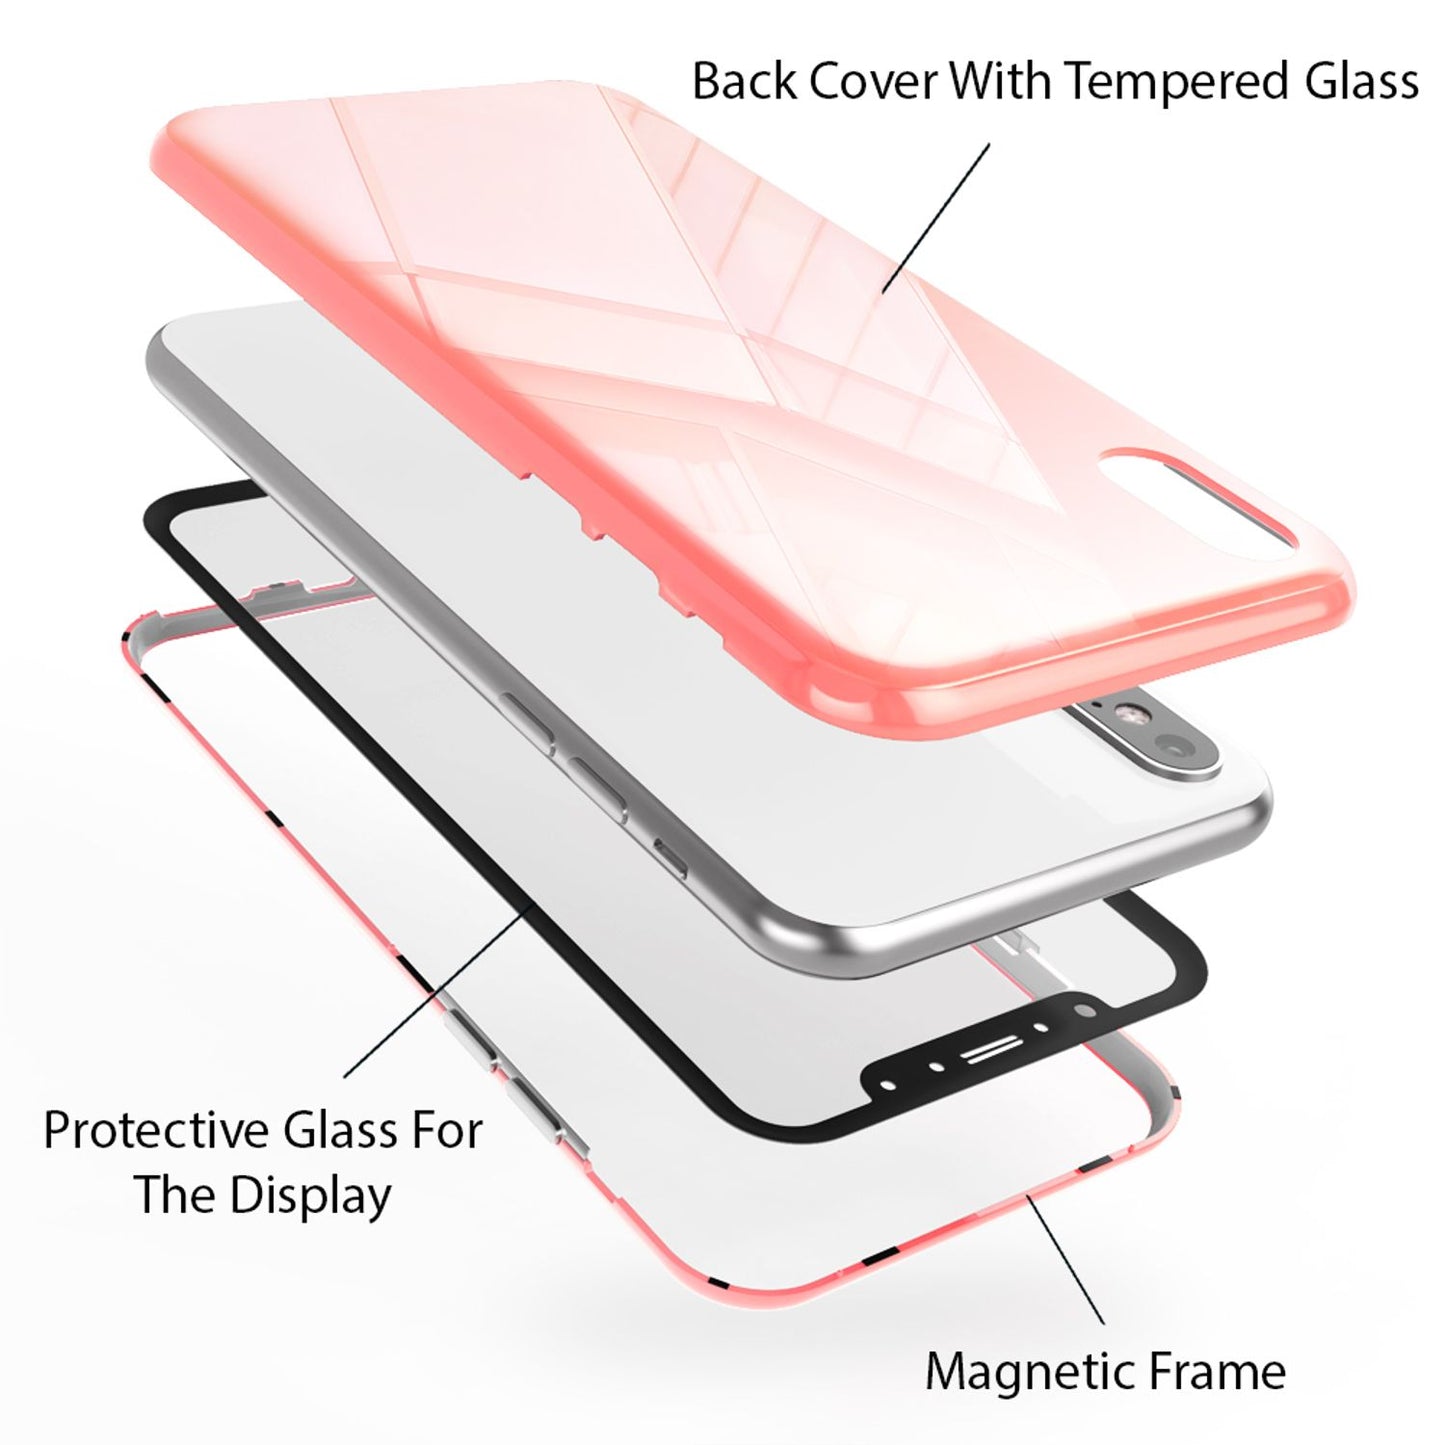 NALIA 360° Magnet Hülle für iPhone XS Max, Slim Hard Case mit Display Schutz